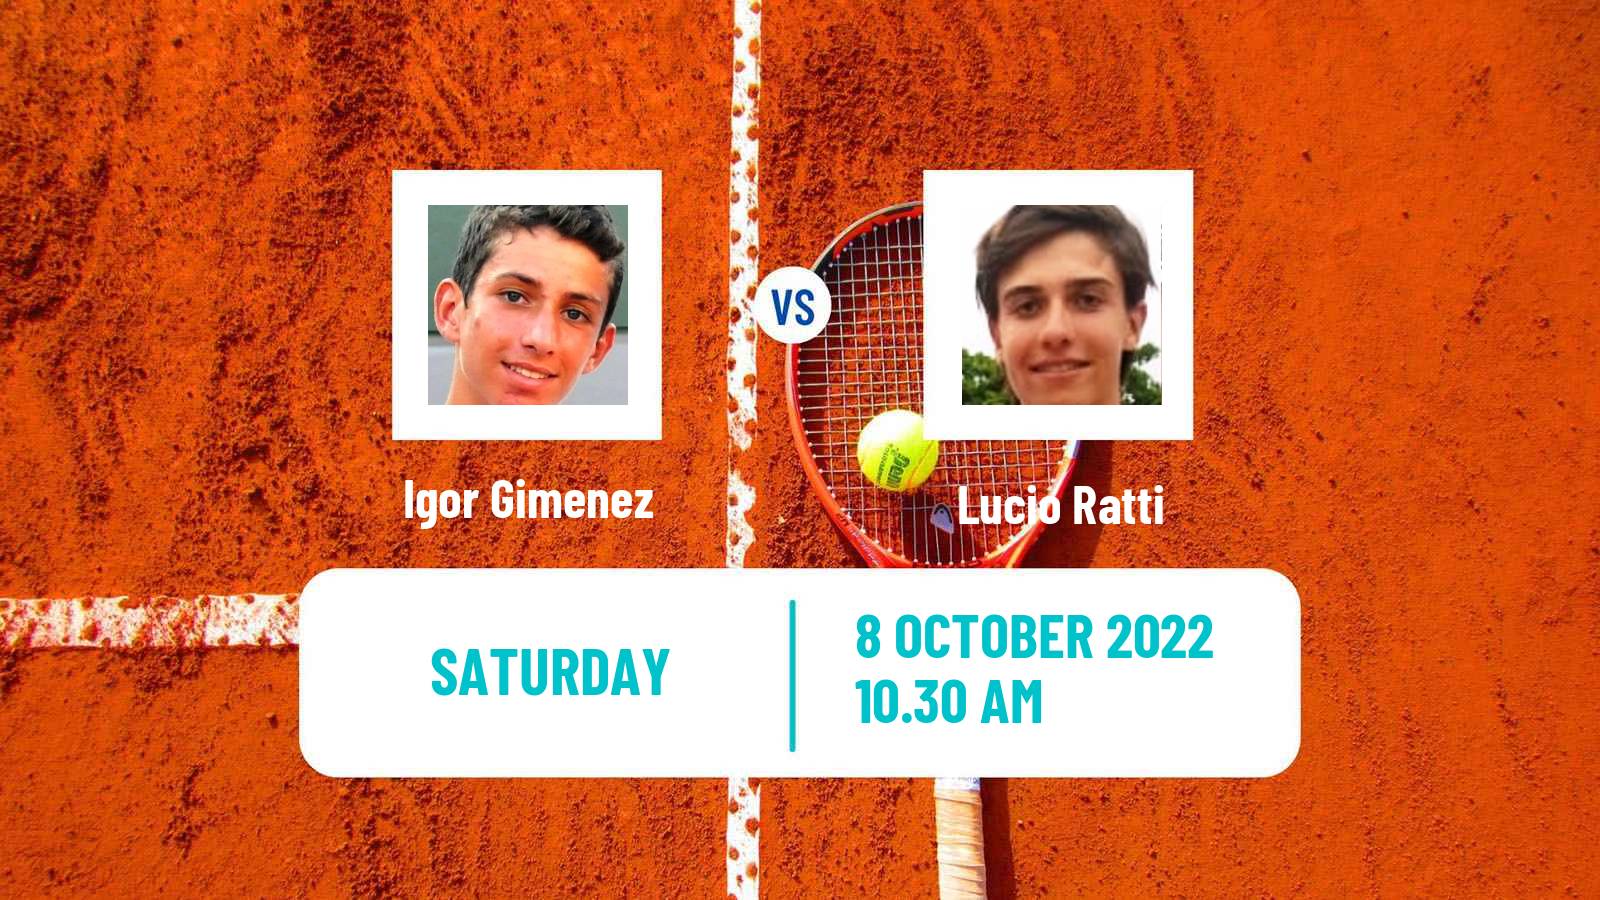 Tennis ITF Tournaments Igor Gimenez - Lucio Ratti